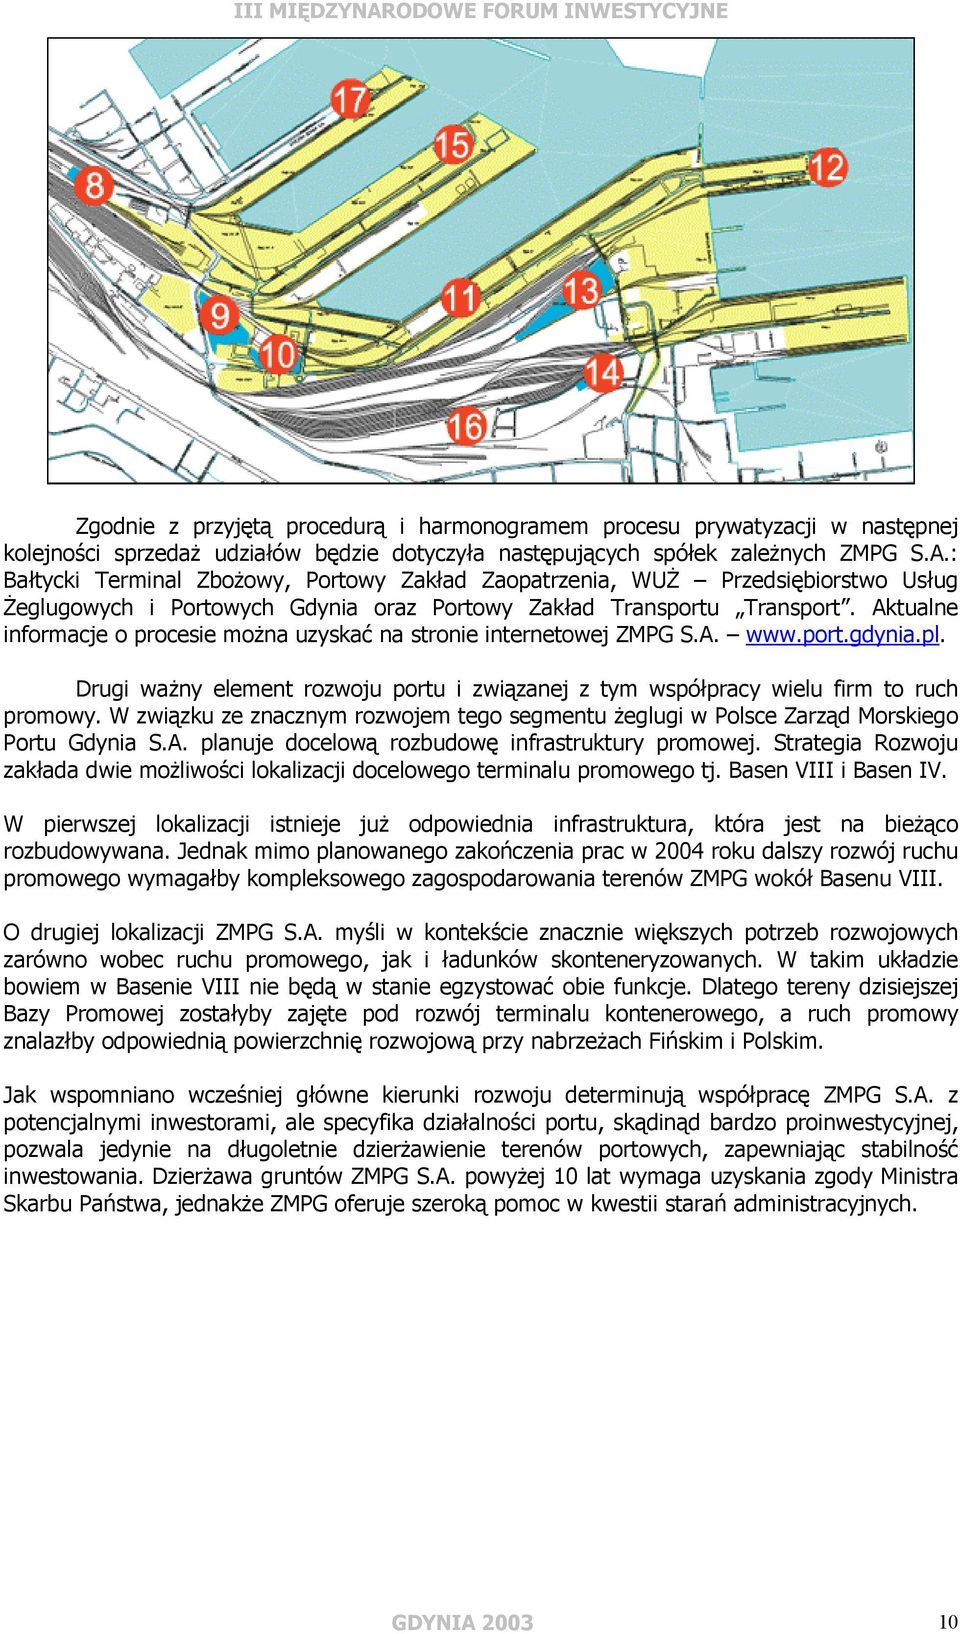 Aktualne informacje o procesie można uzyskać na stronie internetowej ZMPG S.A. www.port.gdynia.pl. Drugi ważny element rozwoju portu i związanej z tym współpracy wielu firm to ruch promowy.